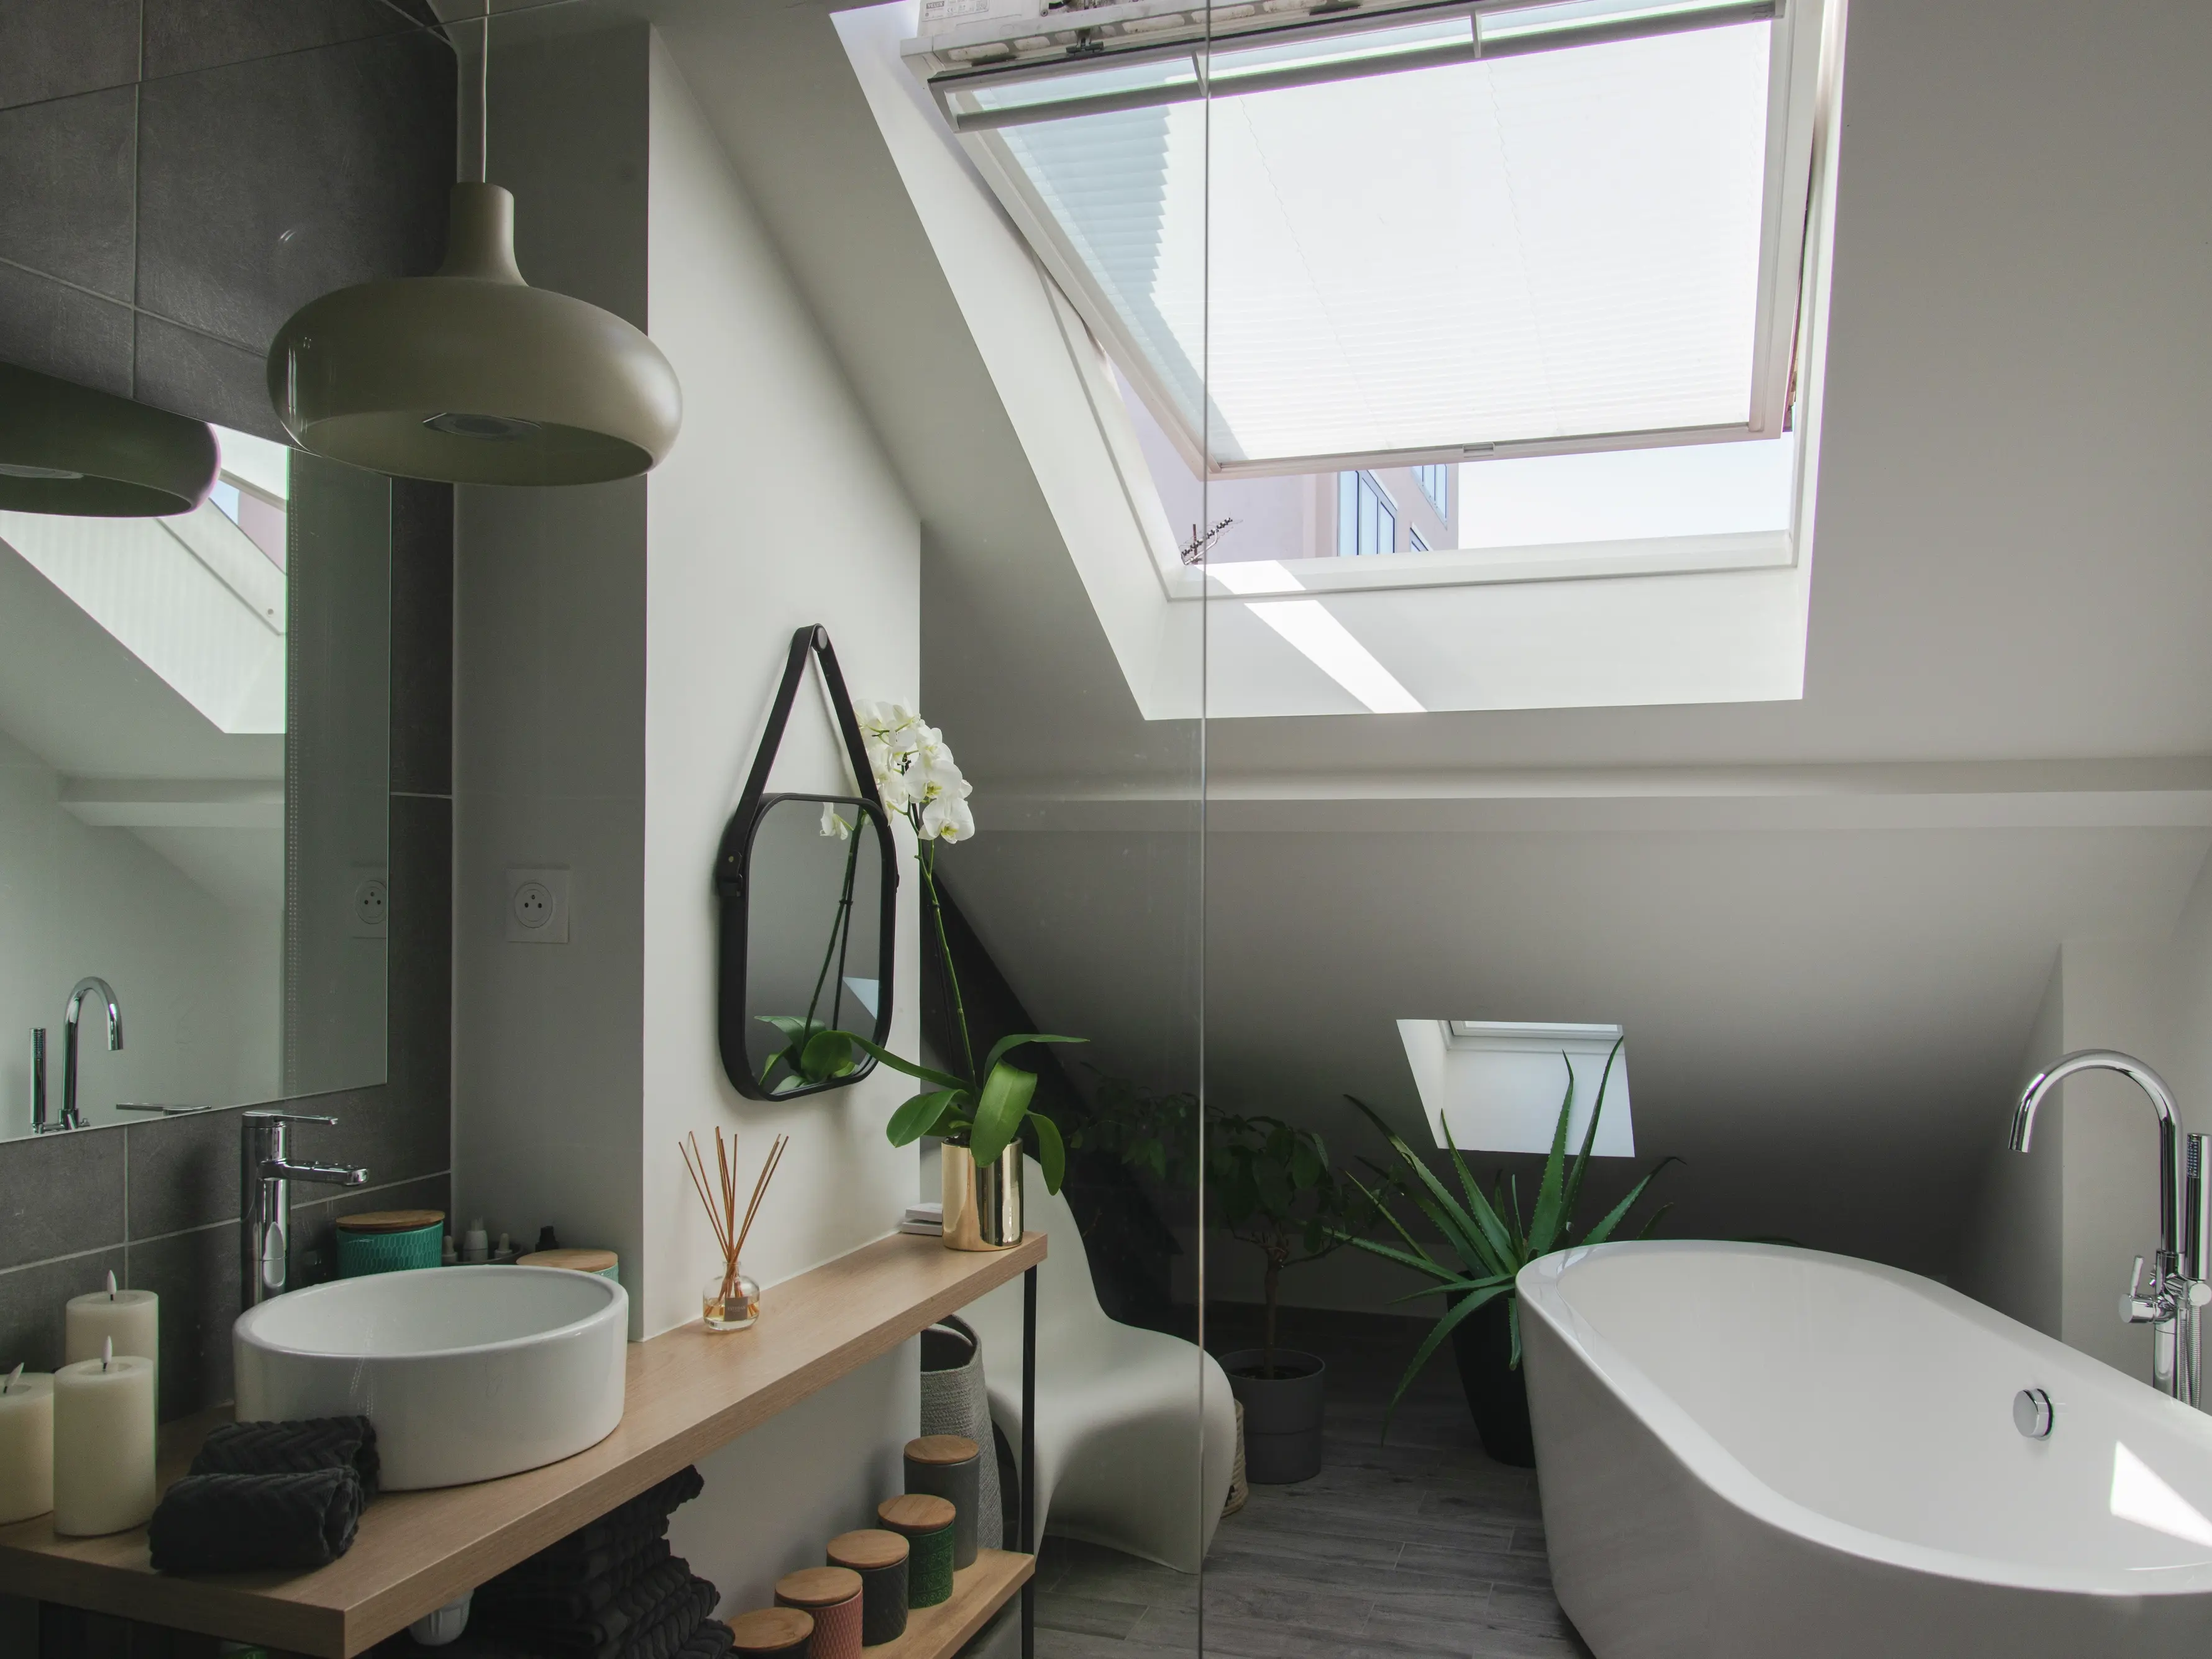 Salle de bain moderne avec fenêtre de toit VELUX, baignoire indépendante et meuble-lavabo en bois.